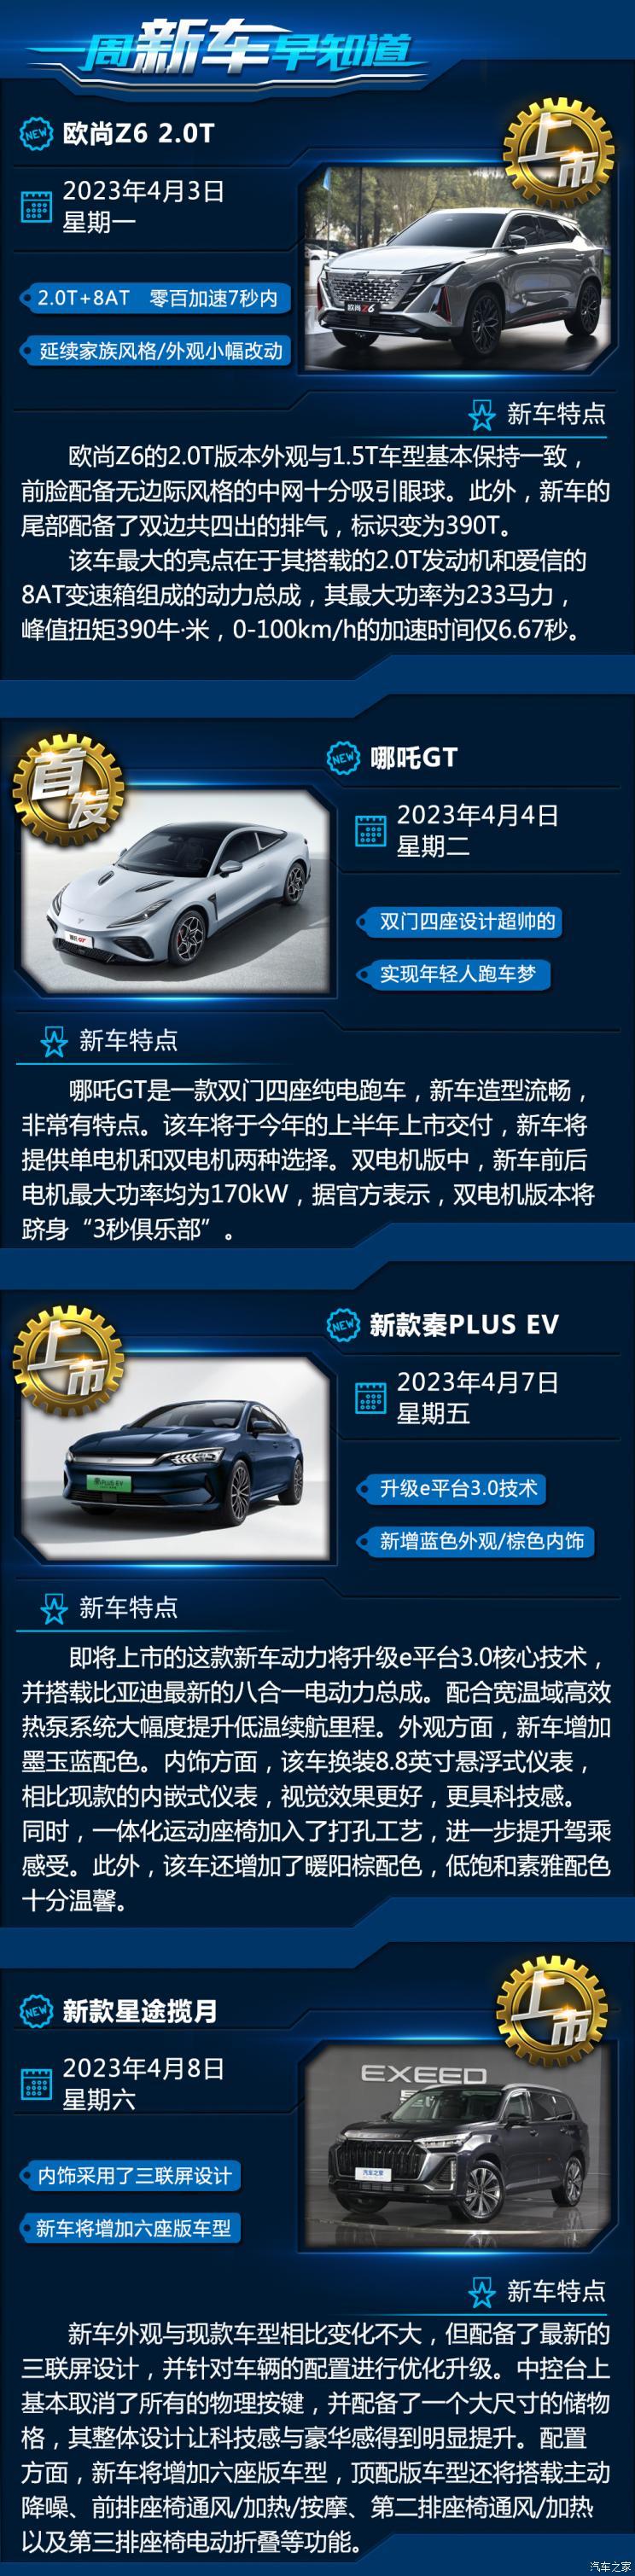 Xingtu Lanyue/Nezha GT и другие новые автомобили, узнавайте о новых автомобилях заранее в течение недели.